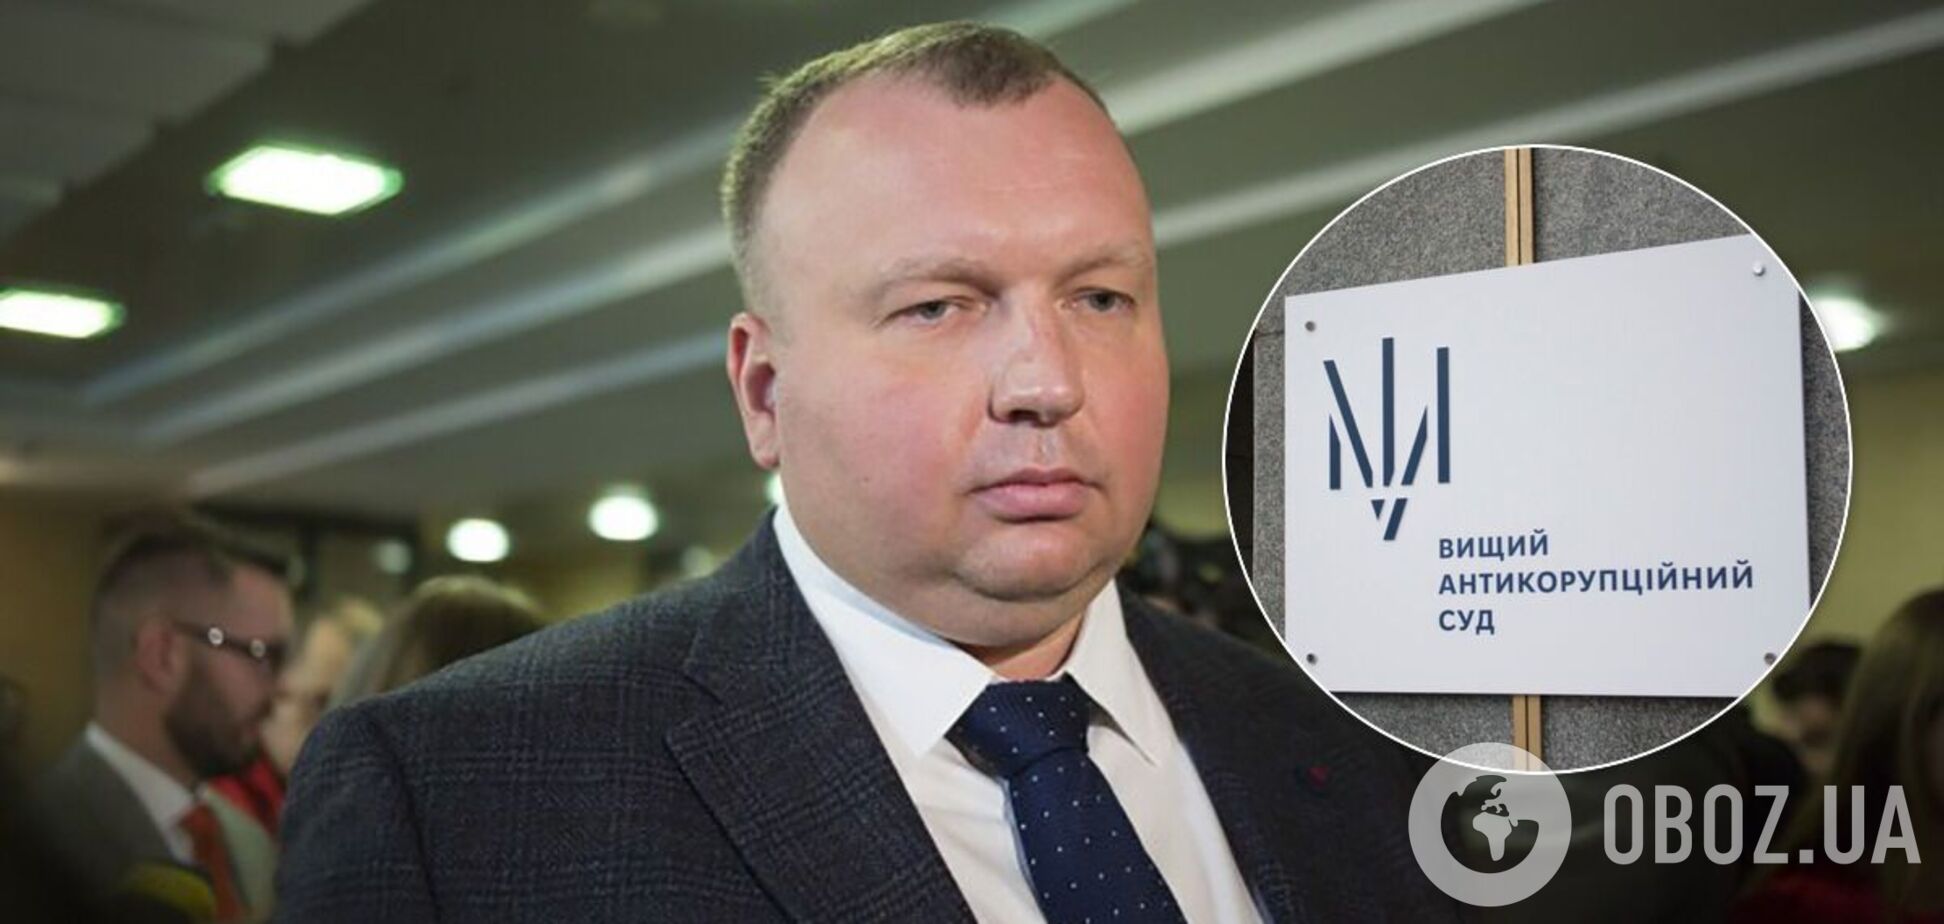 КСУ 'допоміг' закрити кримінальне провадження проти ексглави 'Укроборонпрому'